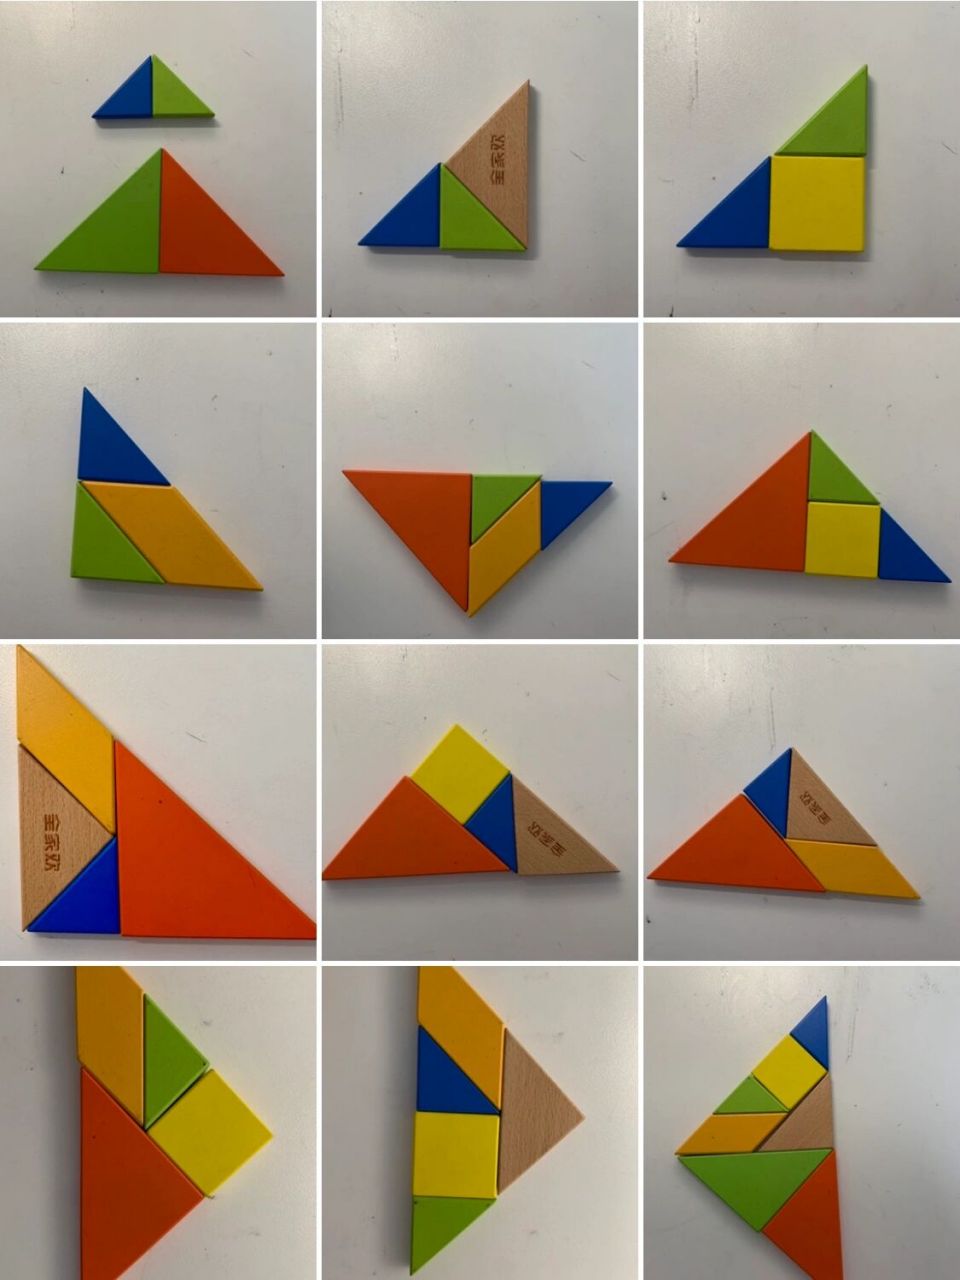 七巧板拼三角形拼法图片